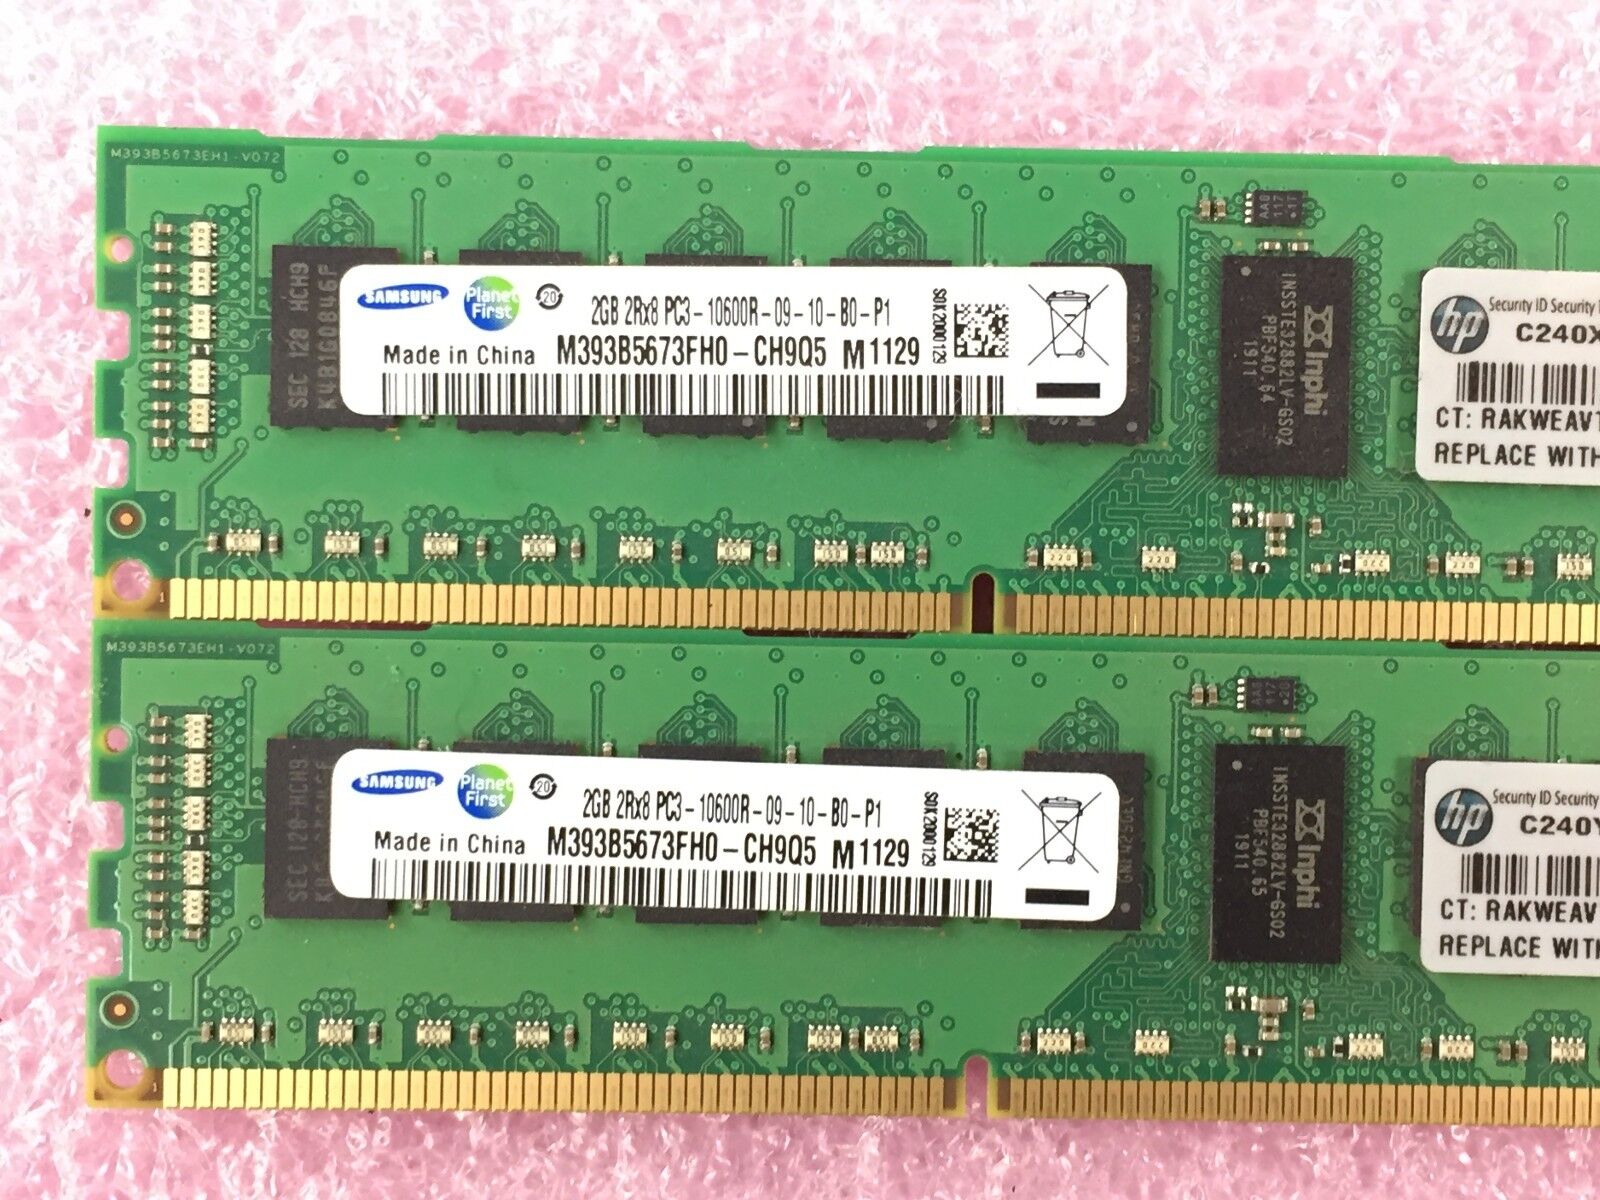 4GB Kit (2x 2GB) 2Rx8 PC3-1600R-09-10-B0-P1 Samsung M393B5673FH0-CH9Q5